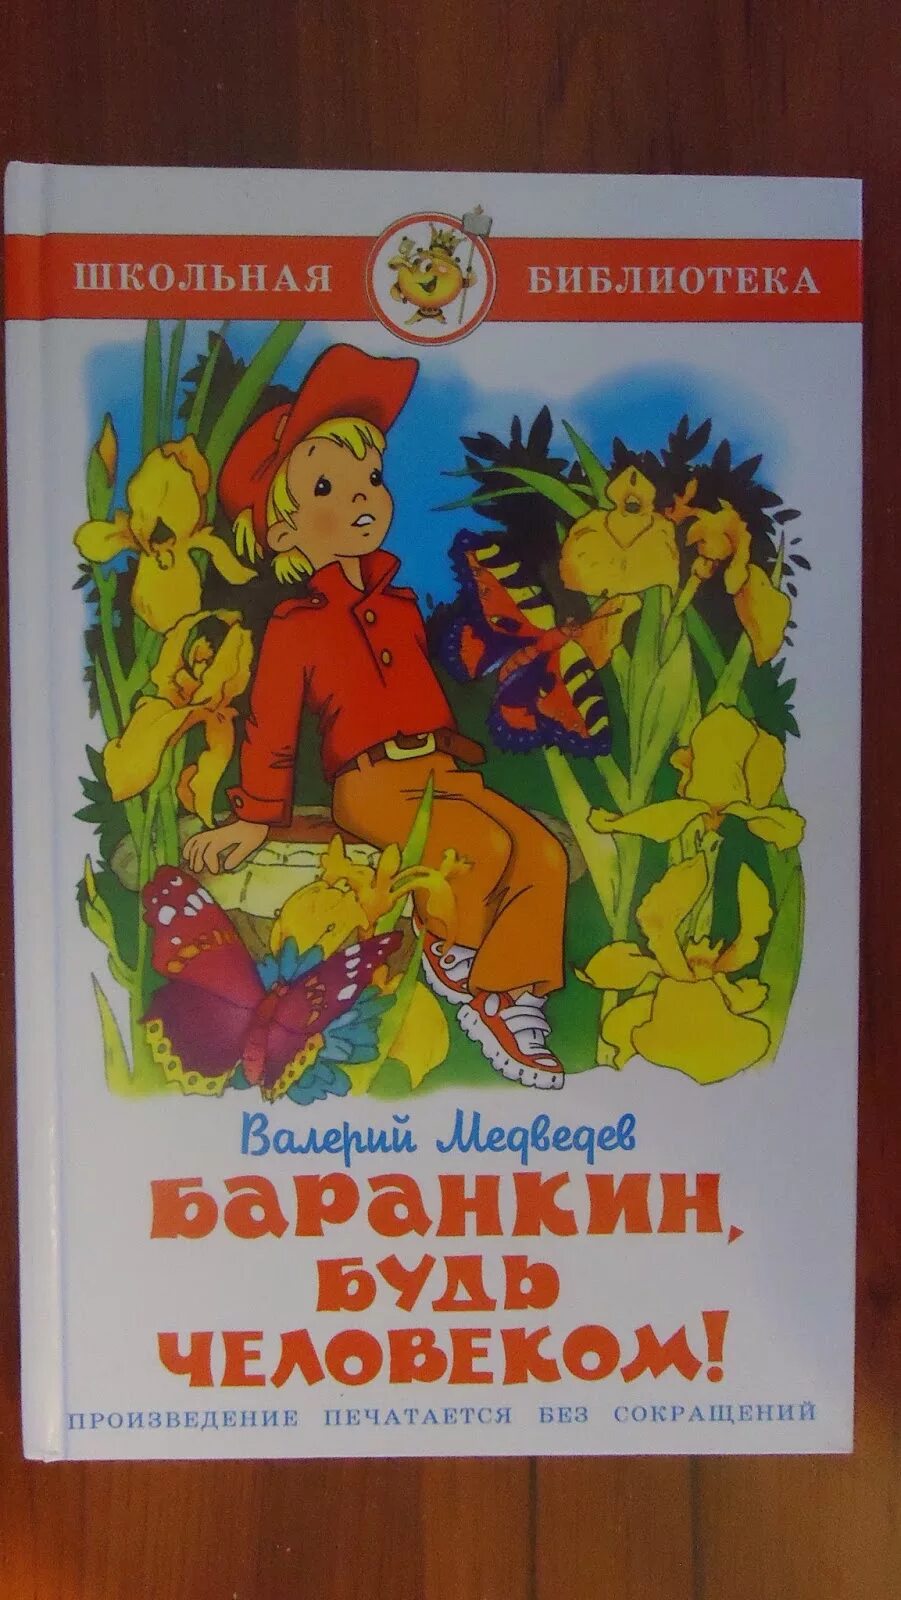 Баранкин. Баранкин будь человеком иллюстрации. Медведев в. "Баранкин, будь человеком!". Баранкин будь человеком пересказ.